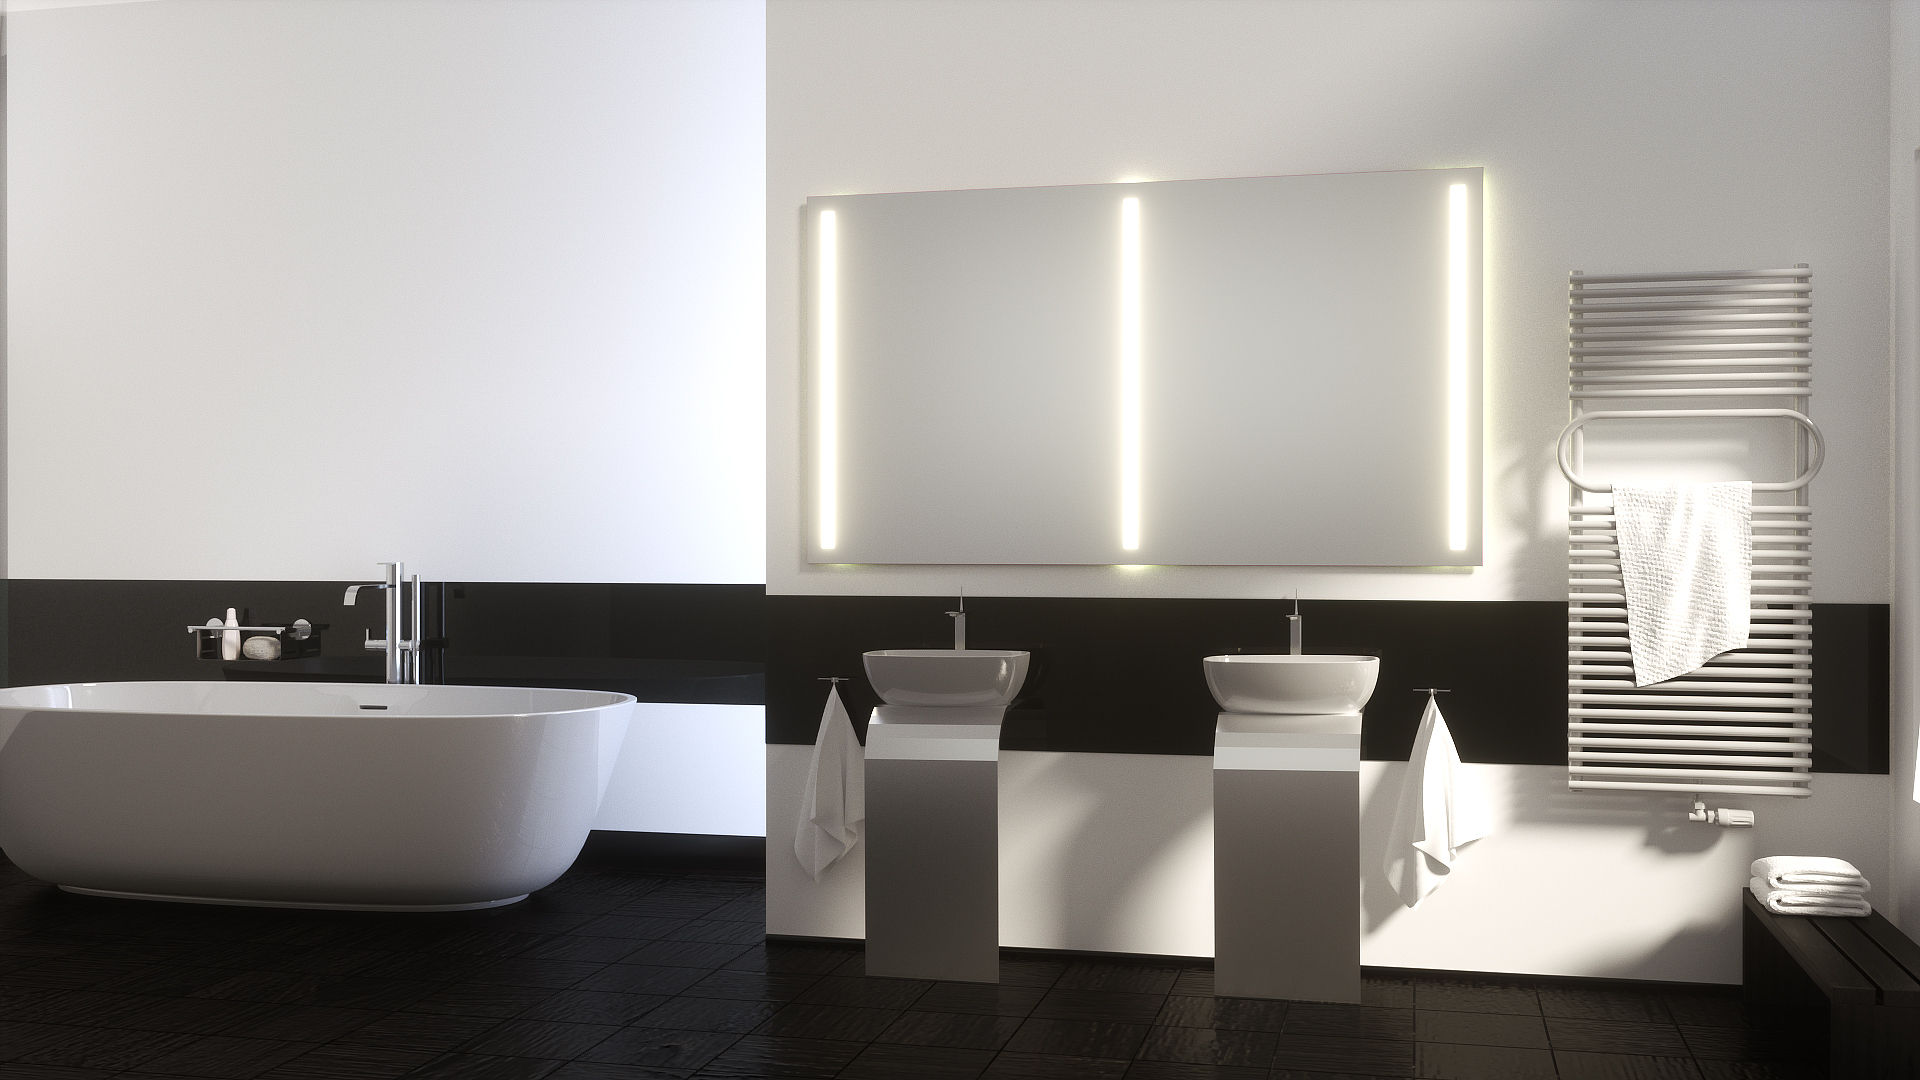 Badspiegel mit Hinterleuchtung, Schreiber Licht-Design-GmbH Schreiber Licht-Design-GmbH Modern bathroom Mirrors